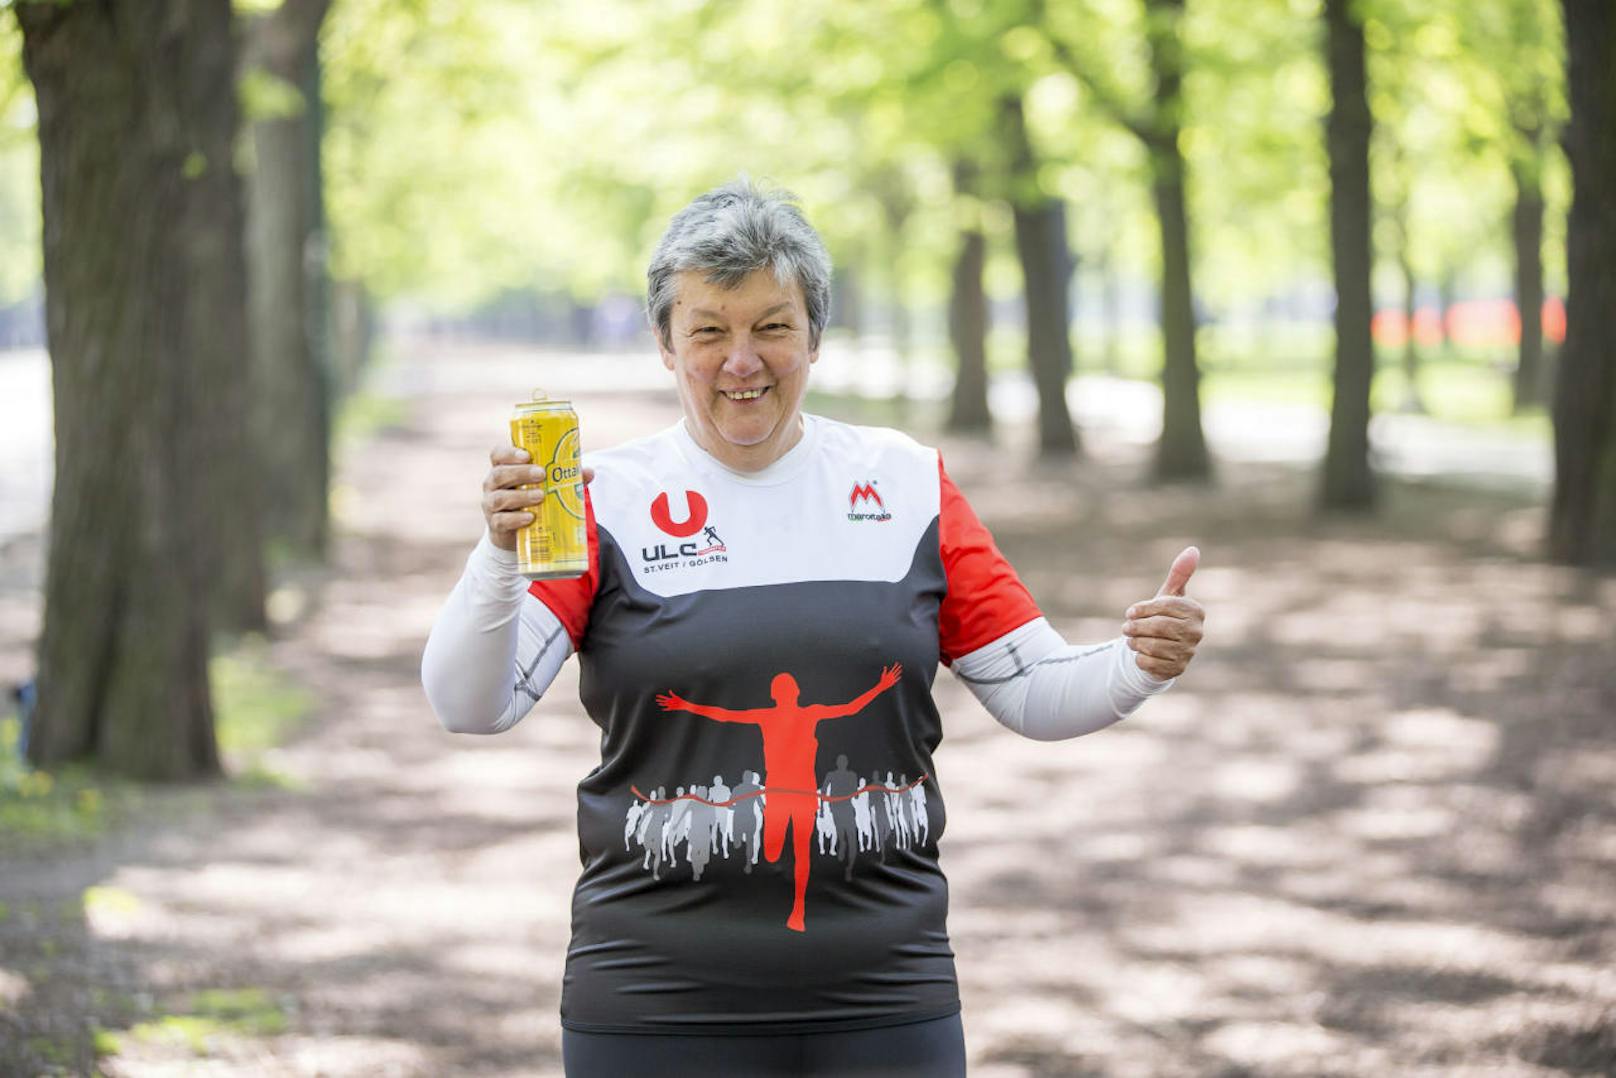 Brigitte Heinz steht am Sonntag zum 30. Mal beim Vienna City Marathon am Start und will zum 25. Mal über die volle Distanz ins Ziel. Keine Frau hat das bisher geschafft. "Heute" verrät die 59-Jährige ihr kurioses Doping!